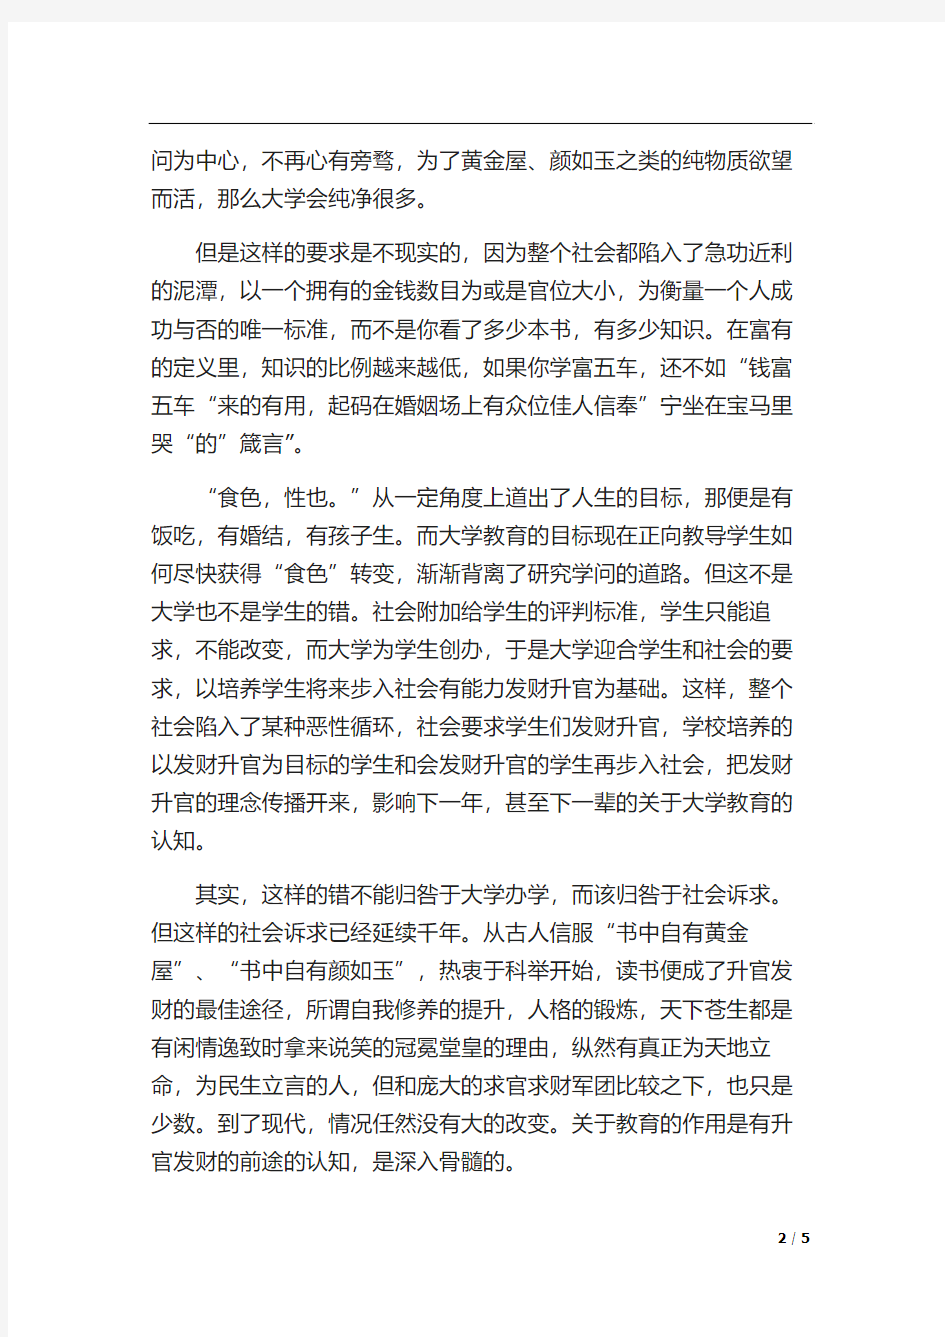 就任北京大学校长之演说 蔡元培 读书报告